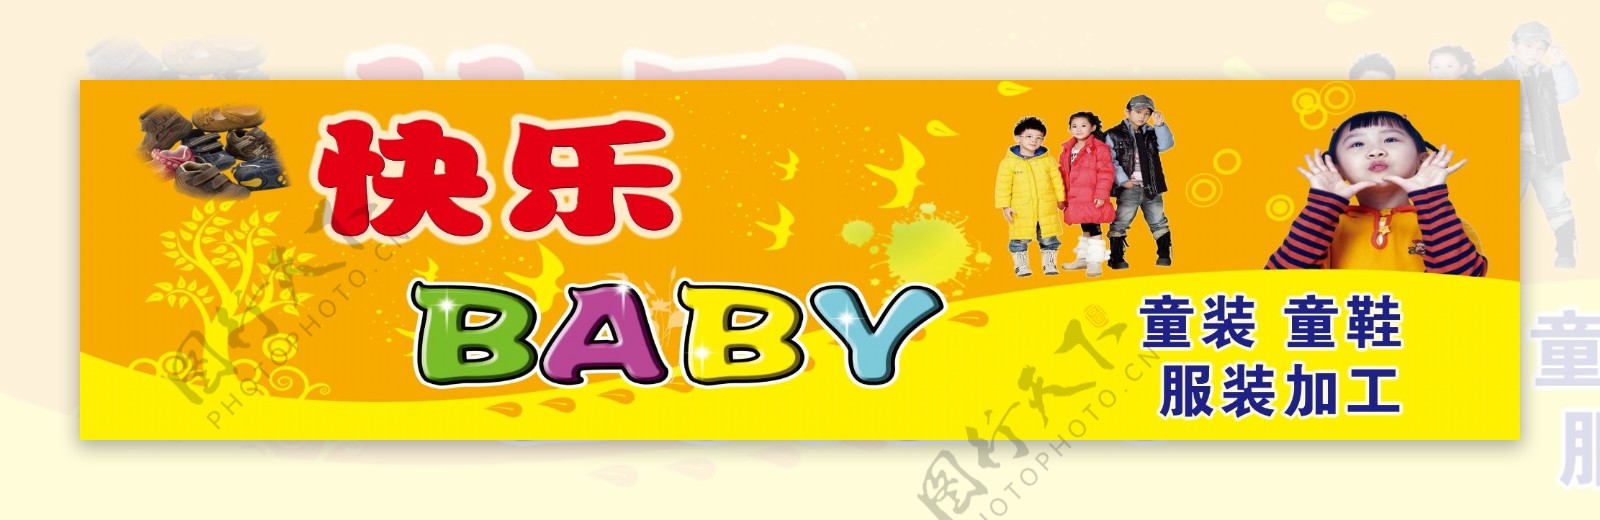 快乐BABy童装店广告